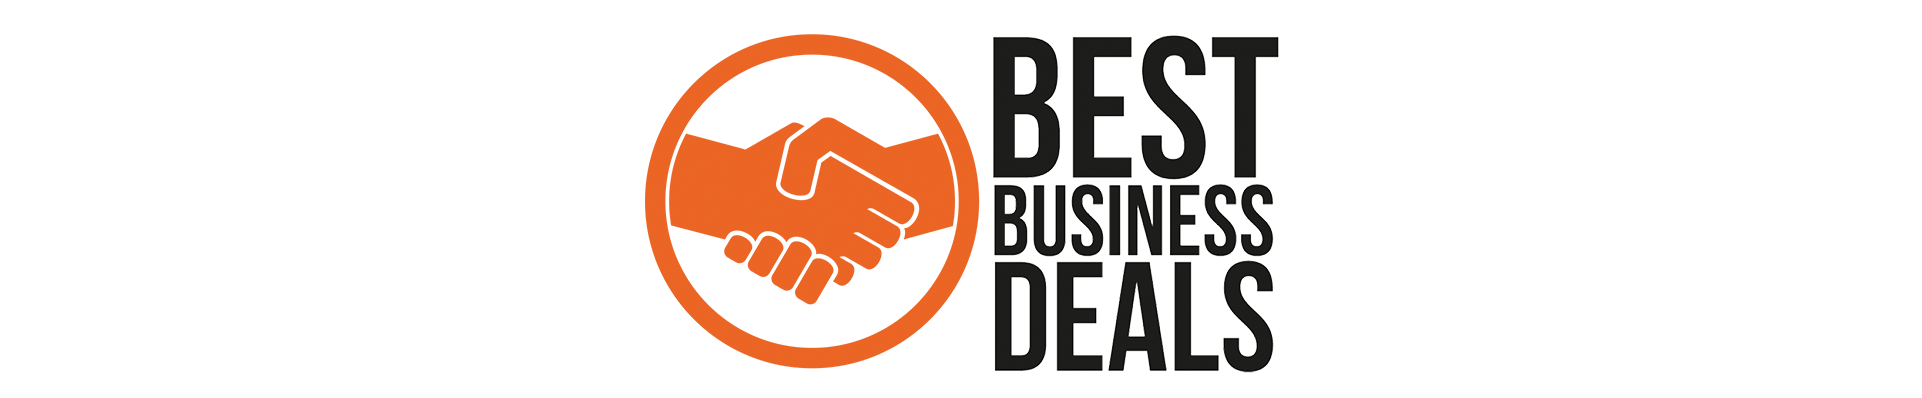 Best Business Deals